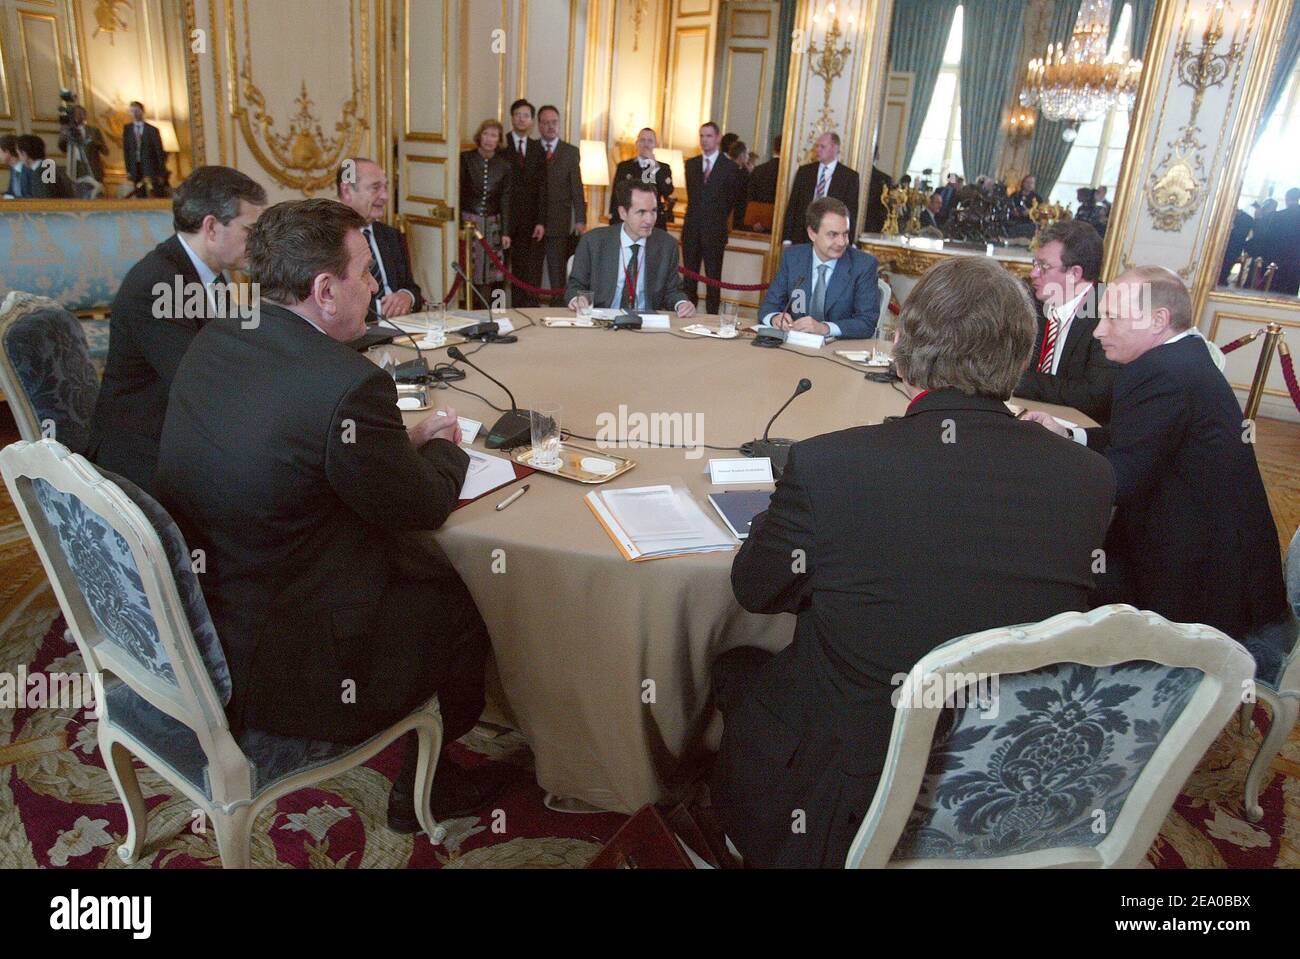 Treffen im Elysee-Palast in Paris, Frankreich am 18. März 2005 mit Präsident Wladimir Putin von Russland, Jacques Chirac von Frankreich, Bundeskanzler Gerhard Schröder von Deutschland und Premierminister Jose Luis Rodriguez Zapatero von Spanien. Foto von Elodie Gregoire/POOL/ABACA Stockfoto